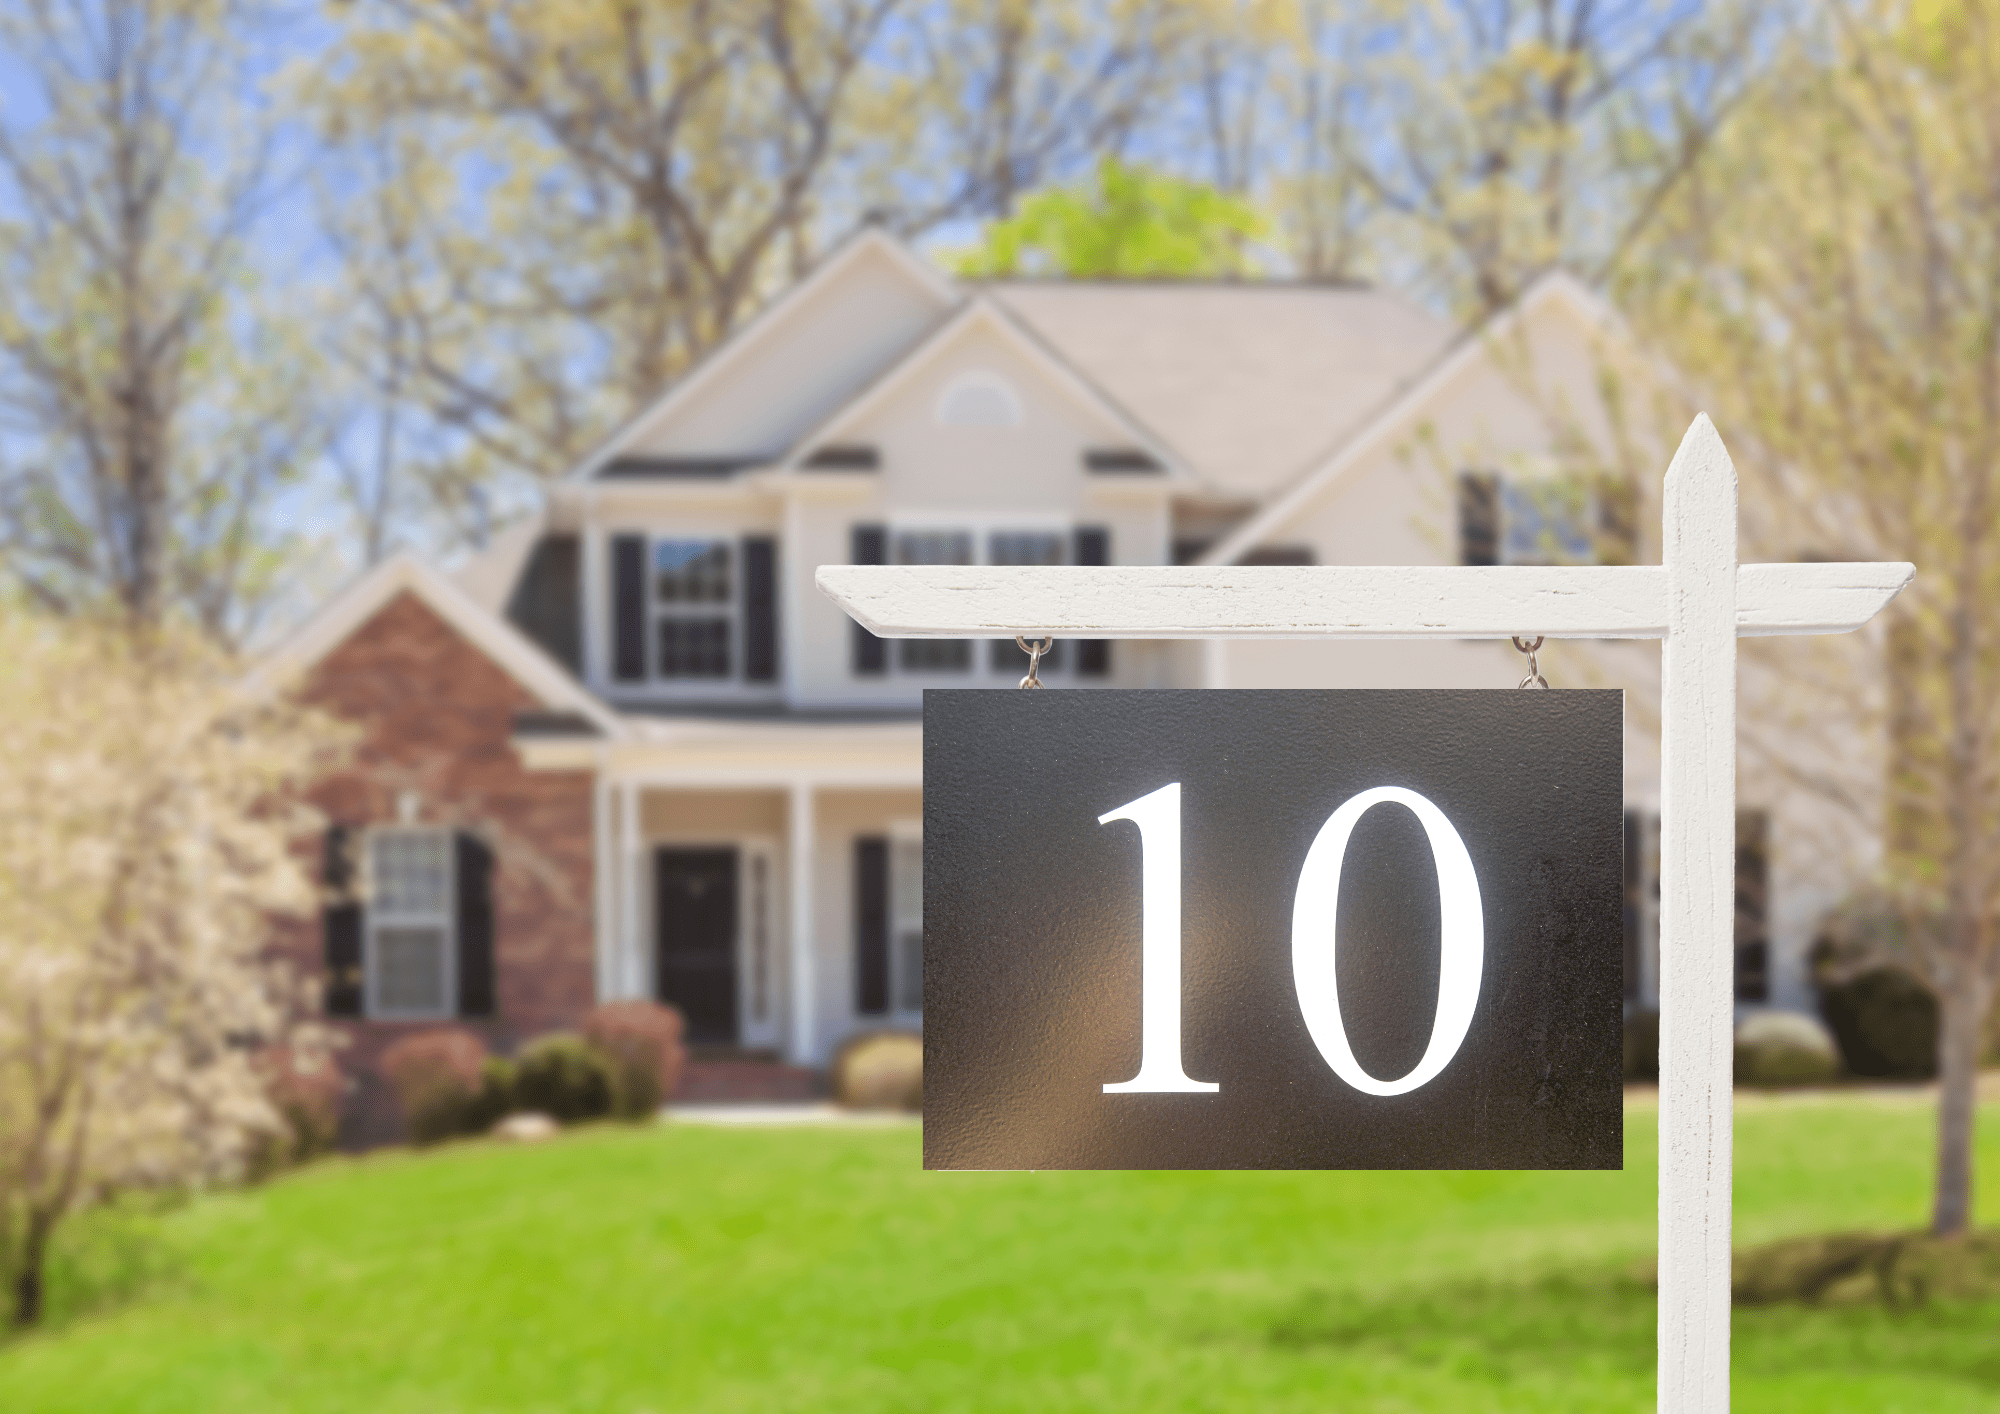 acheter votre premiere maison - Les 10 étapes cruciales pour acheter votre première maison